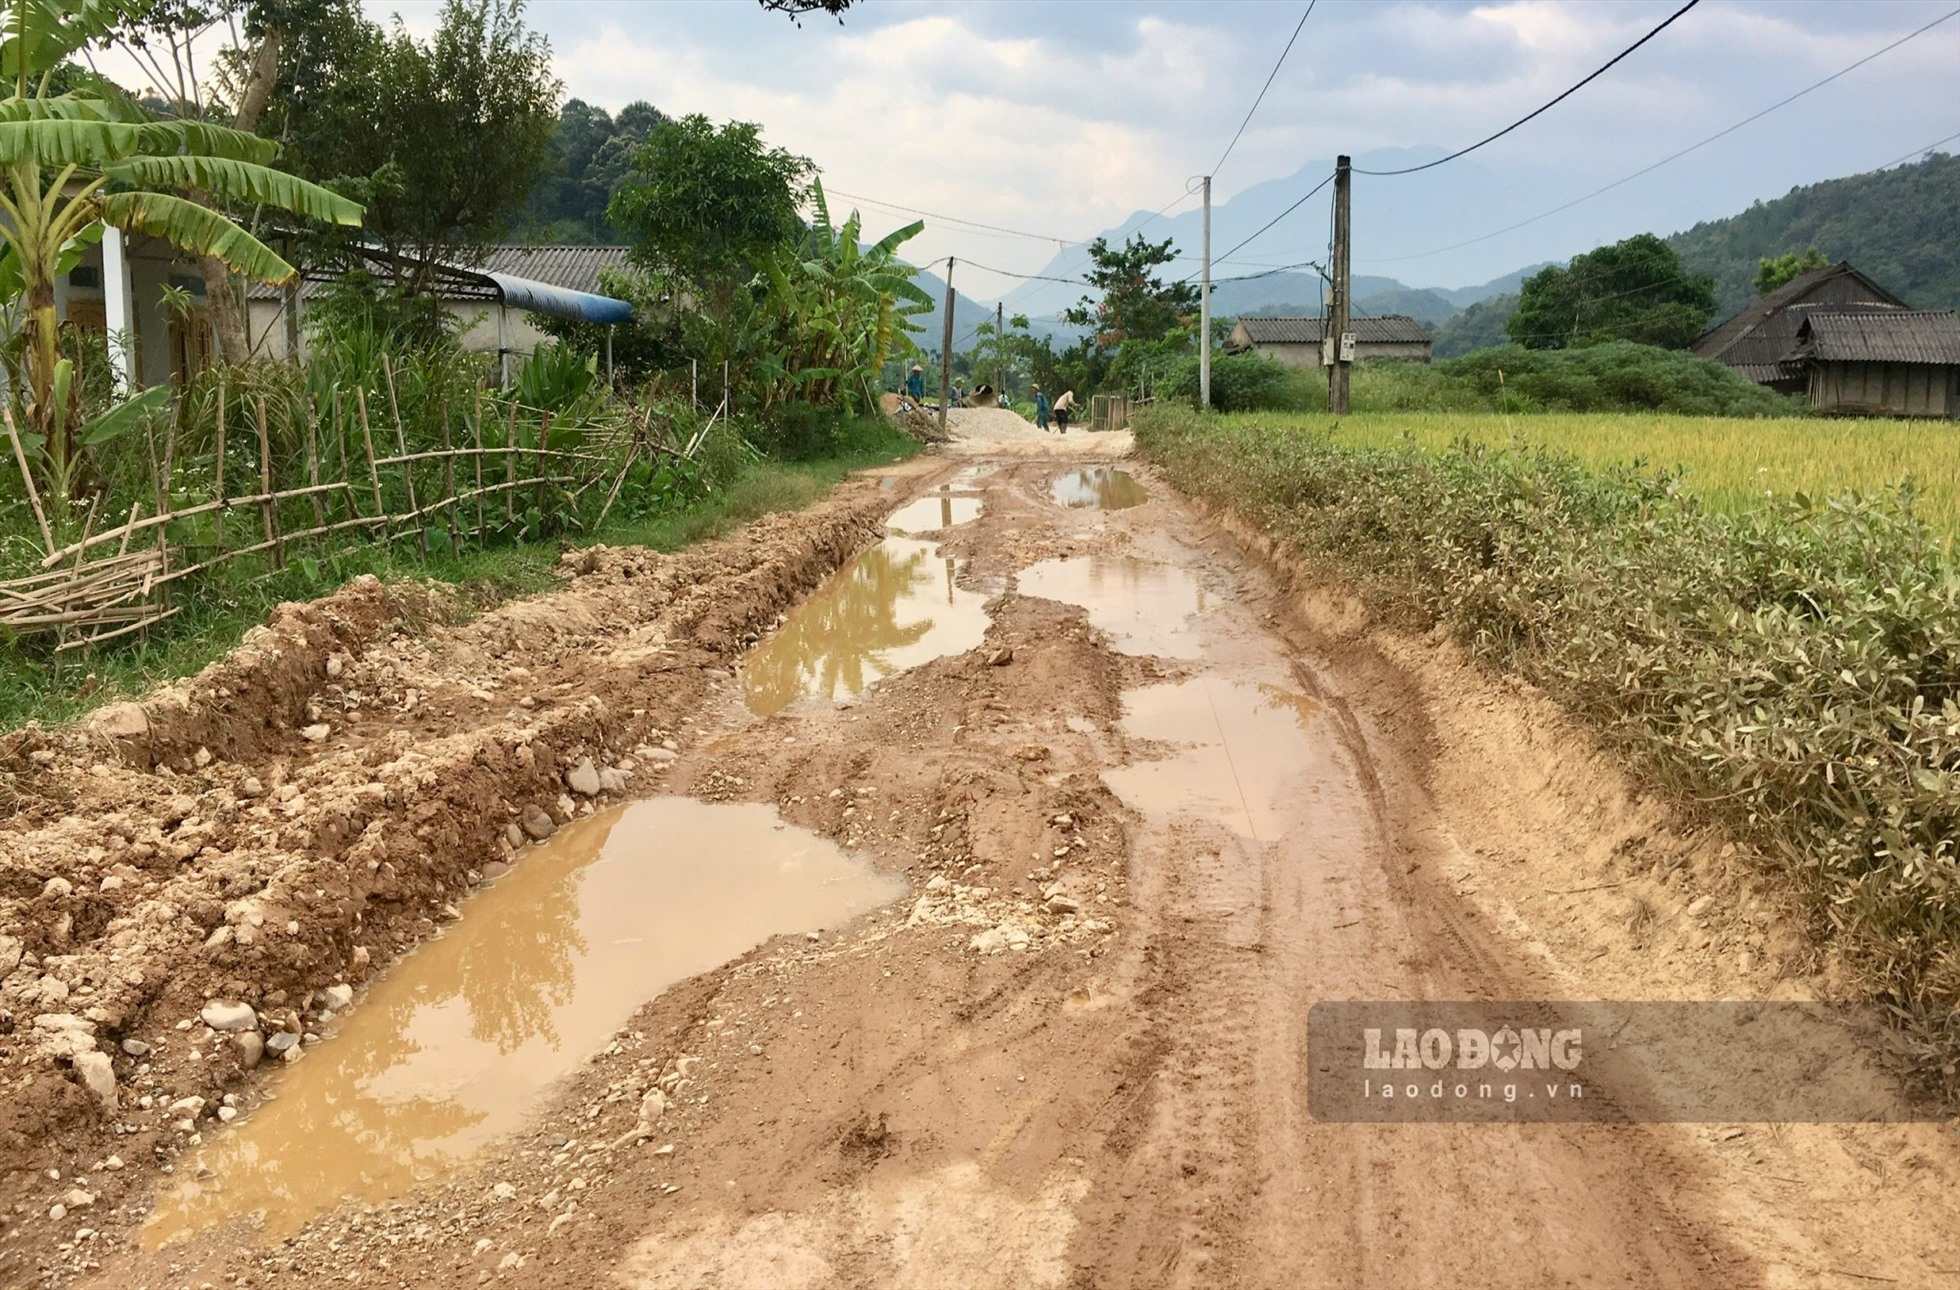 Công trình nâng cấp đường Quốc lộ 32 - Che Bó - Sang Ngà - Bản Mường đang khiến người dân 2 xã Mường Mít và Phúc Than với khốn khổ vì đường xuống cấp nghiêm trọng.